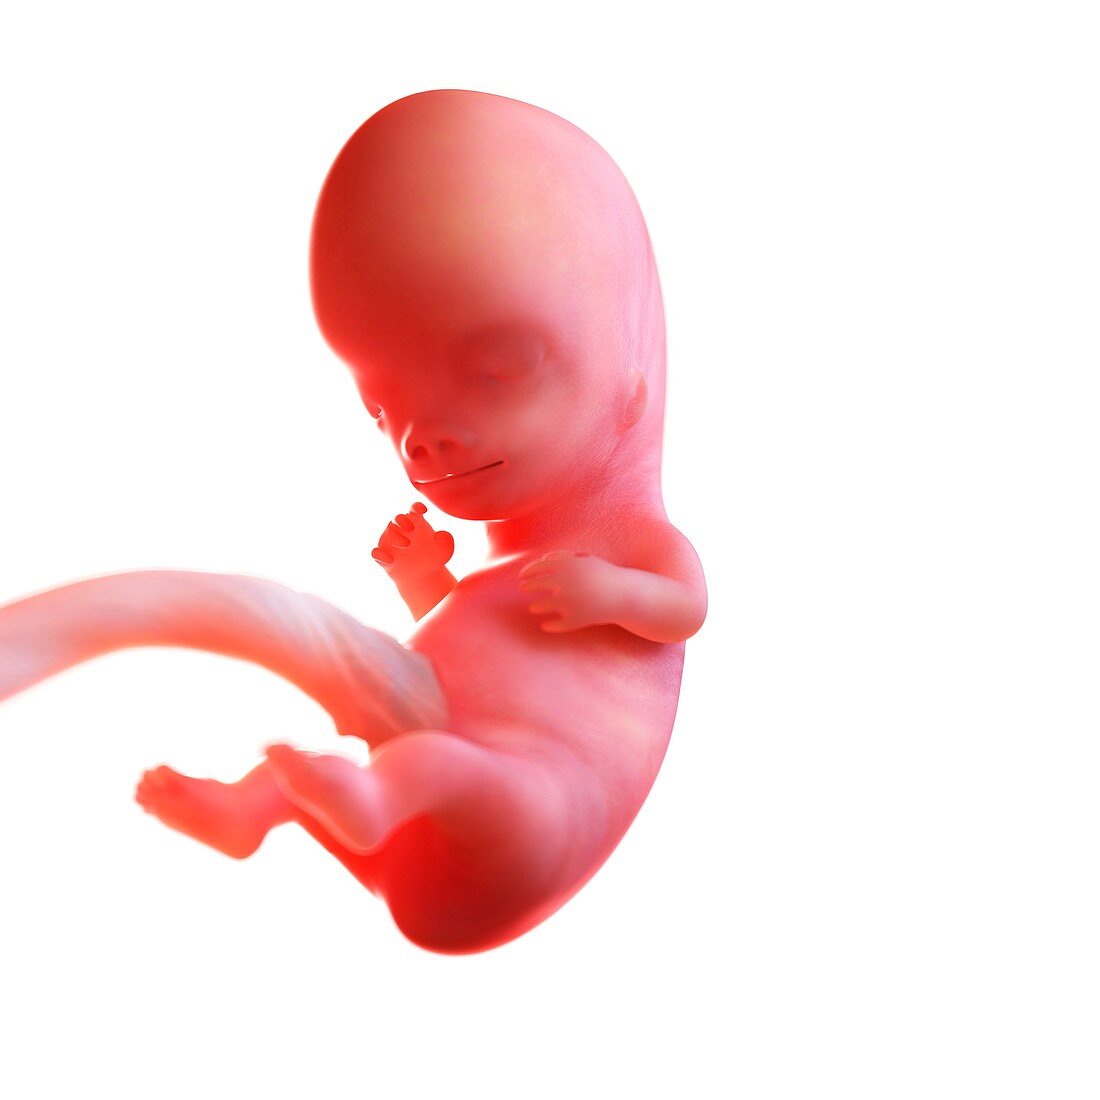 Human foetus age 9 weeks, illustration